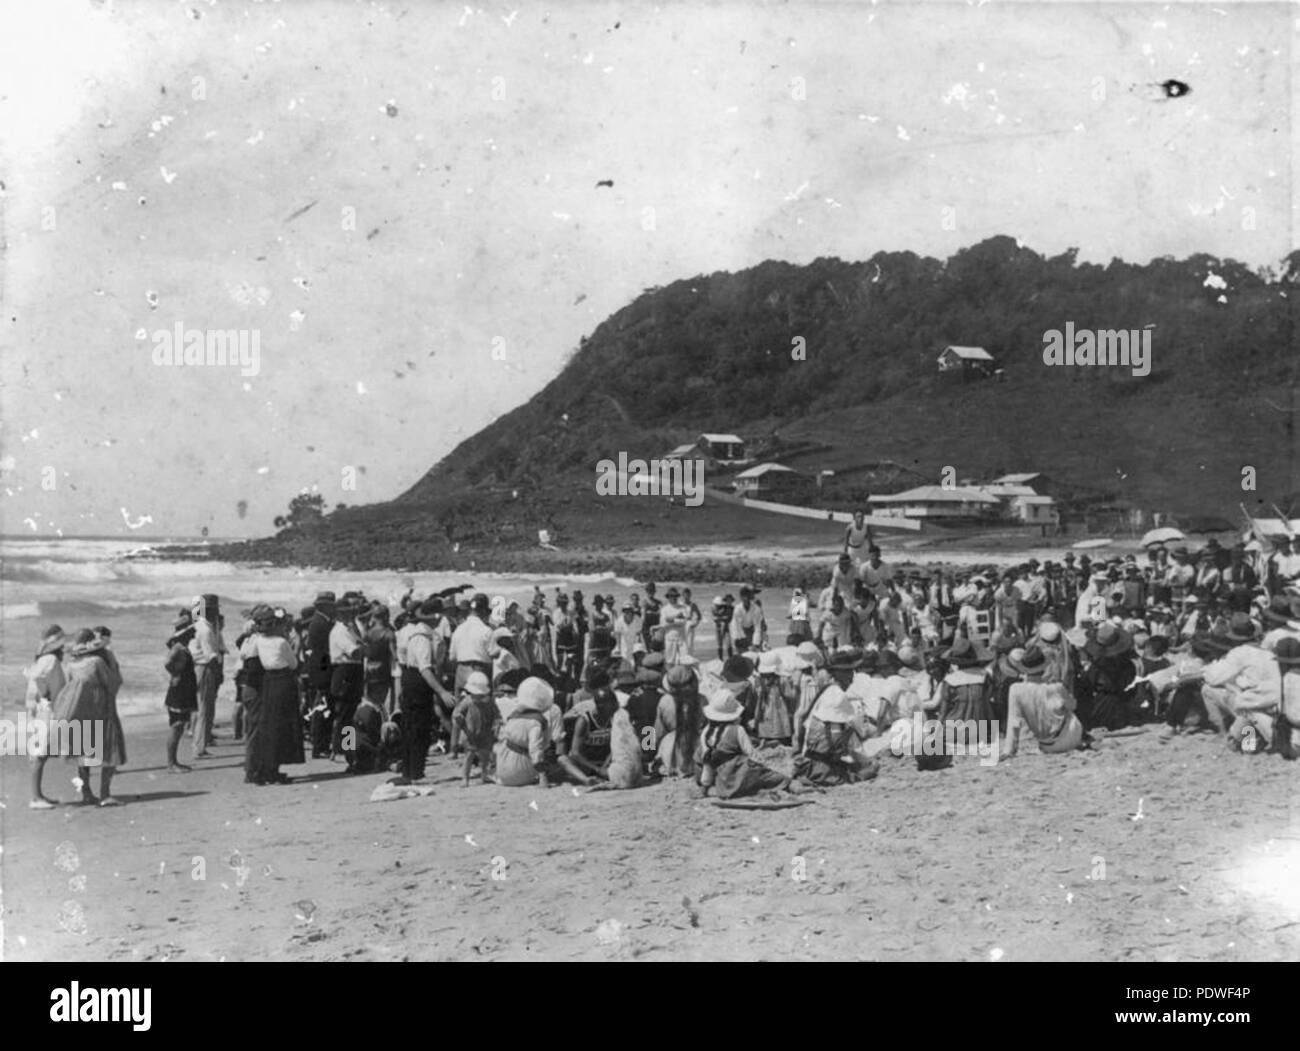 222 1 139935 StateLibQld gimnasia en la playa de Burleigh Heads, Queensland, 1920 Foto de stock